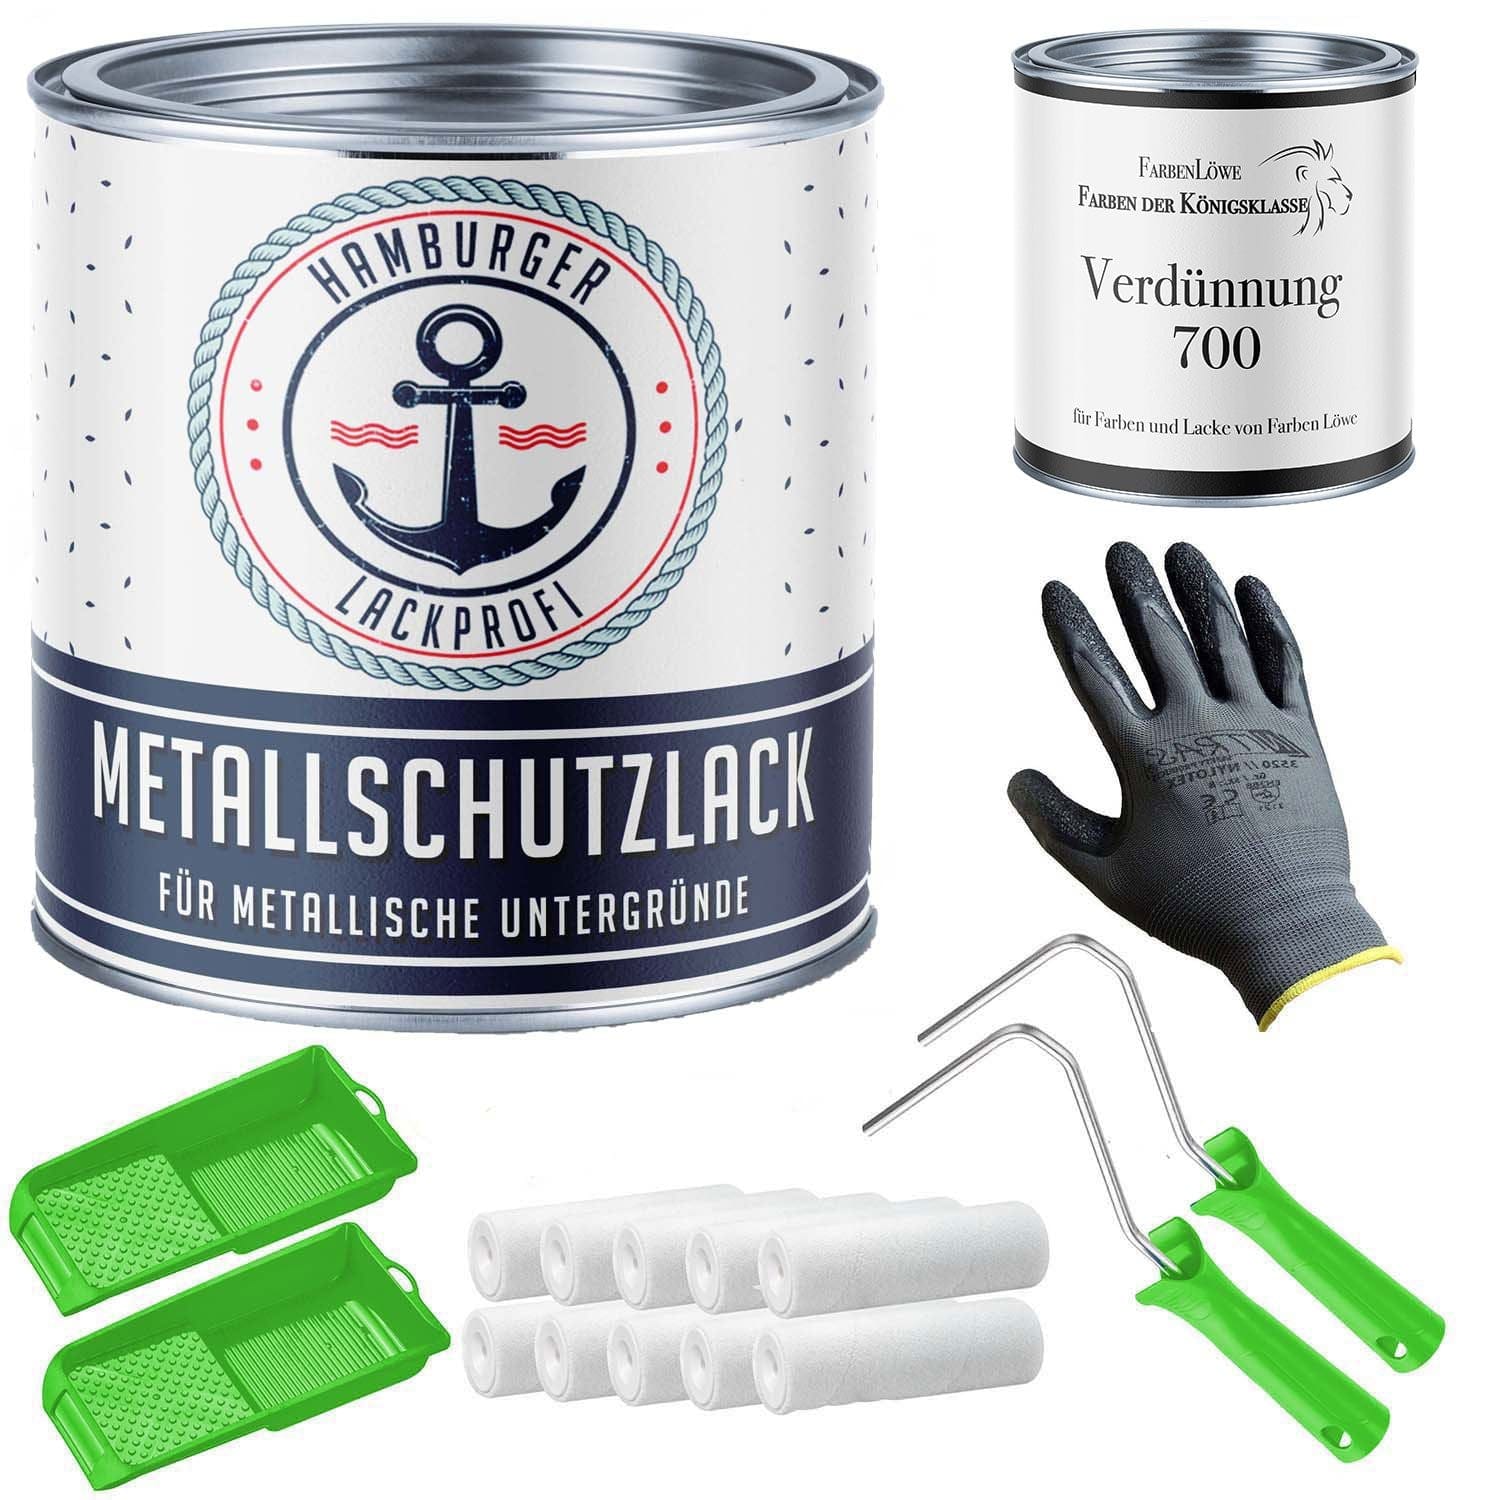 FARBENLÖWE Lacke & Beschichtungen Hamburger Lack-Profi Metallschutzlack in Steingrau RAL 7030 mit Lackierset (X300) & Verdünnung (1 L) - 30% Sparangebot